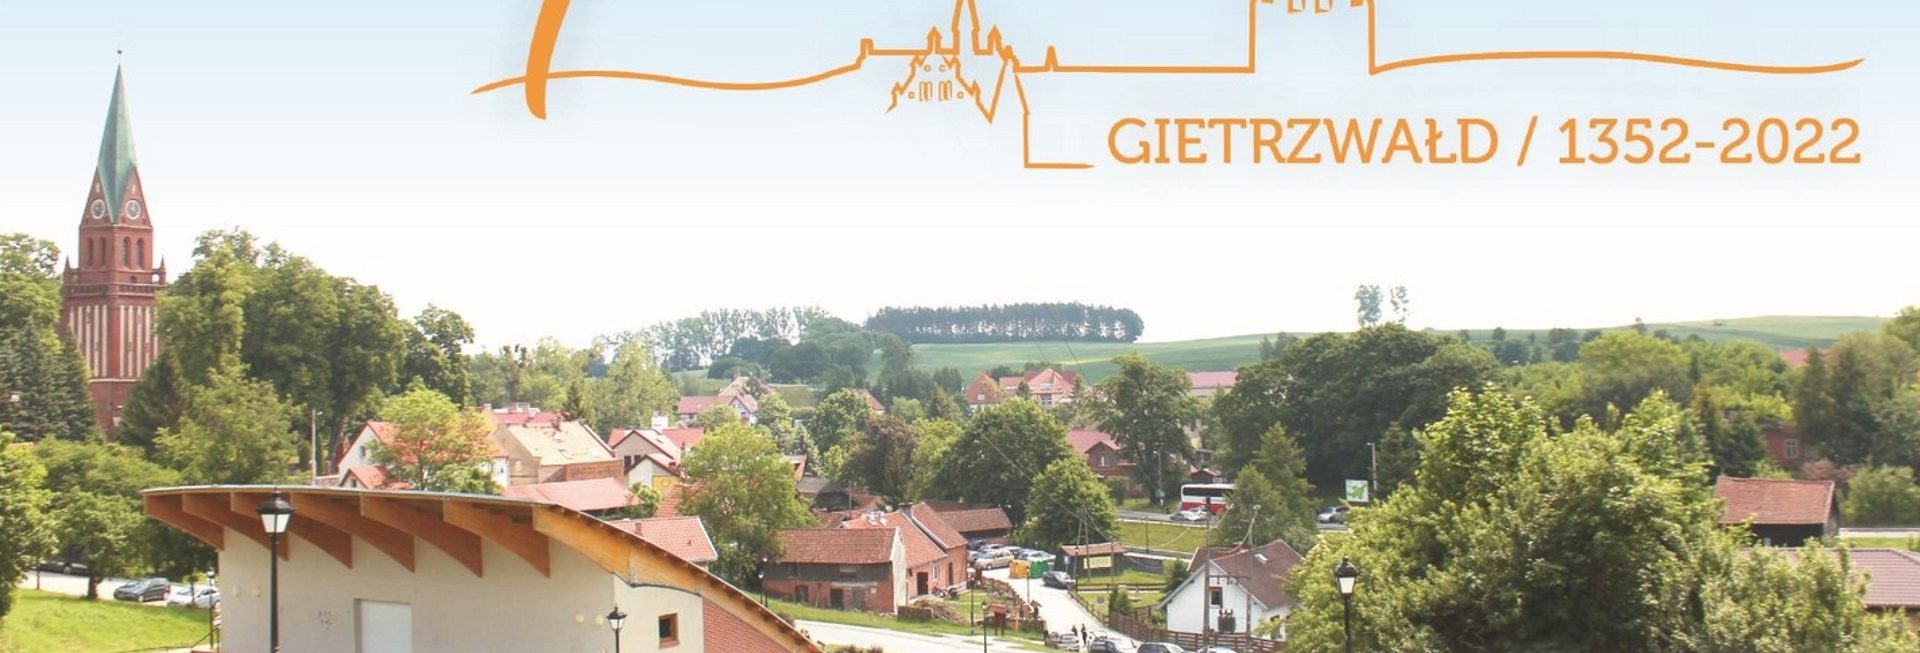 Plakat graficzny zapraszający do Gietrzwałdu na Festyn urodzinowy z okazji świętowania 670-lecia Gietrzwałdu.